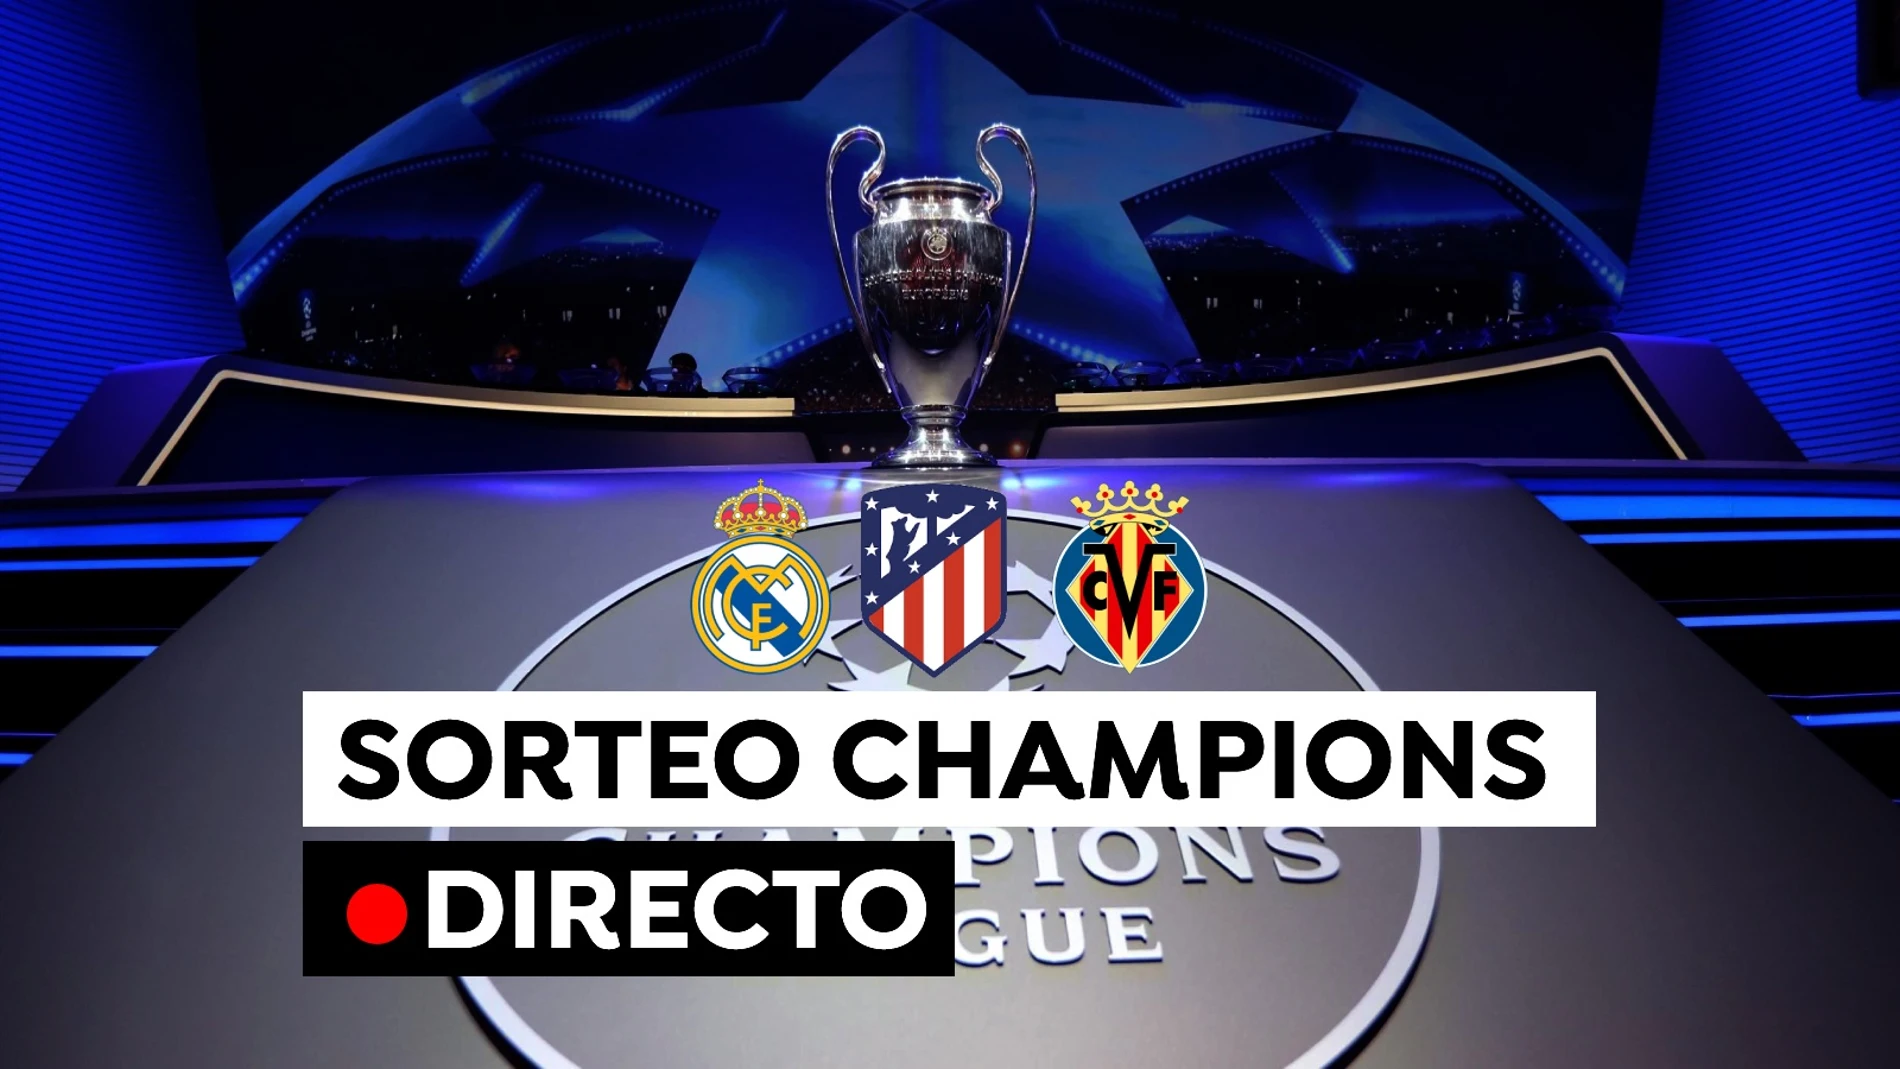 Sorteo hoy en directo: Cruces, emparejamientos y rivales del Madrid, y Villarreal